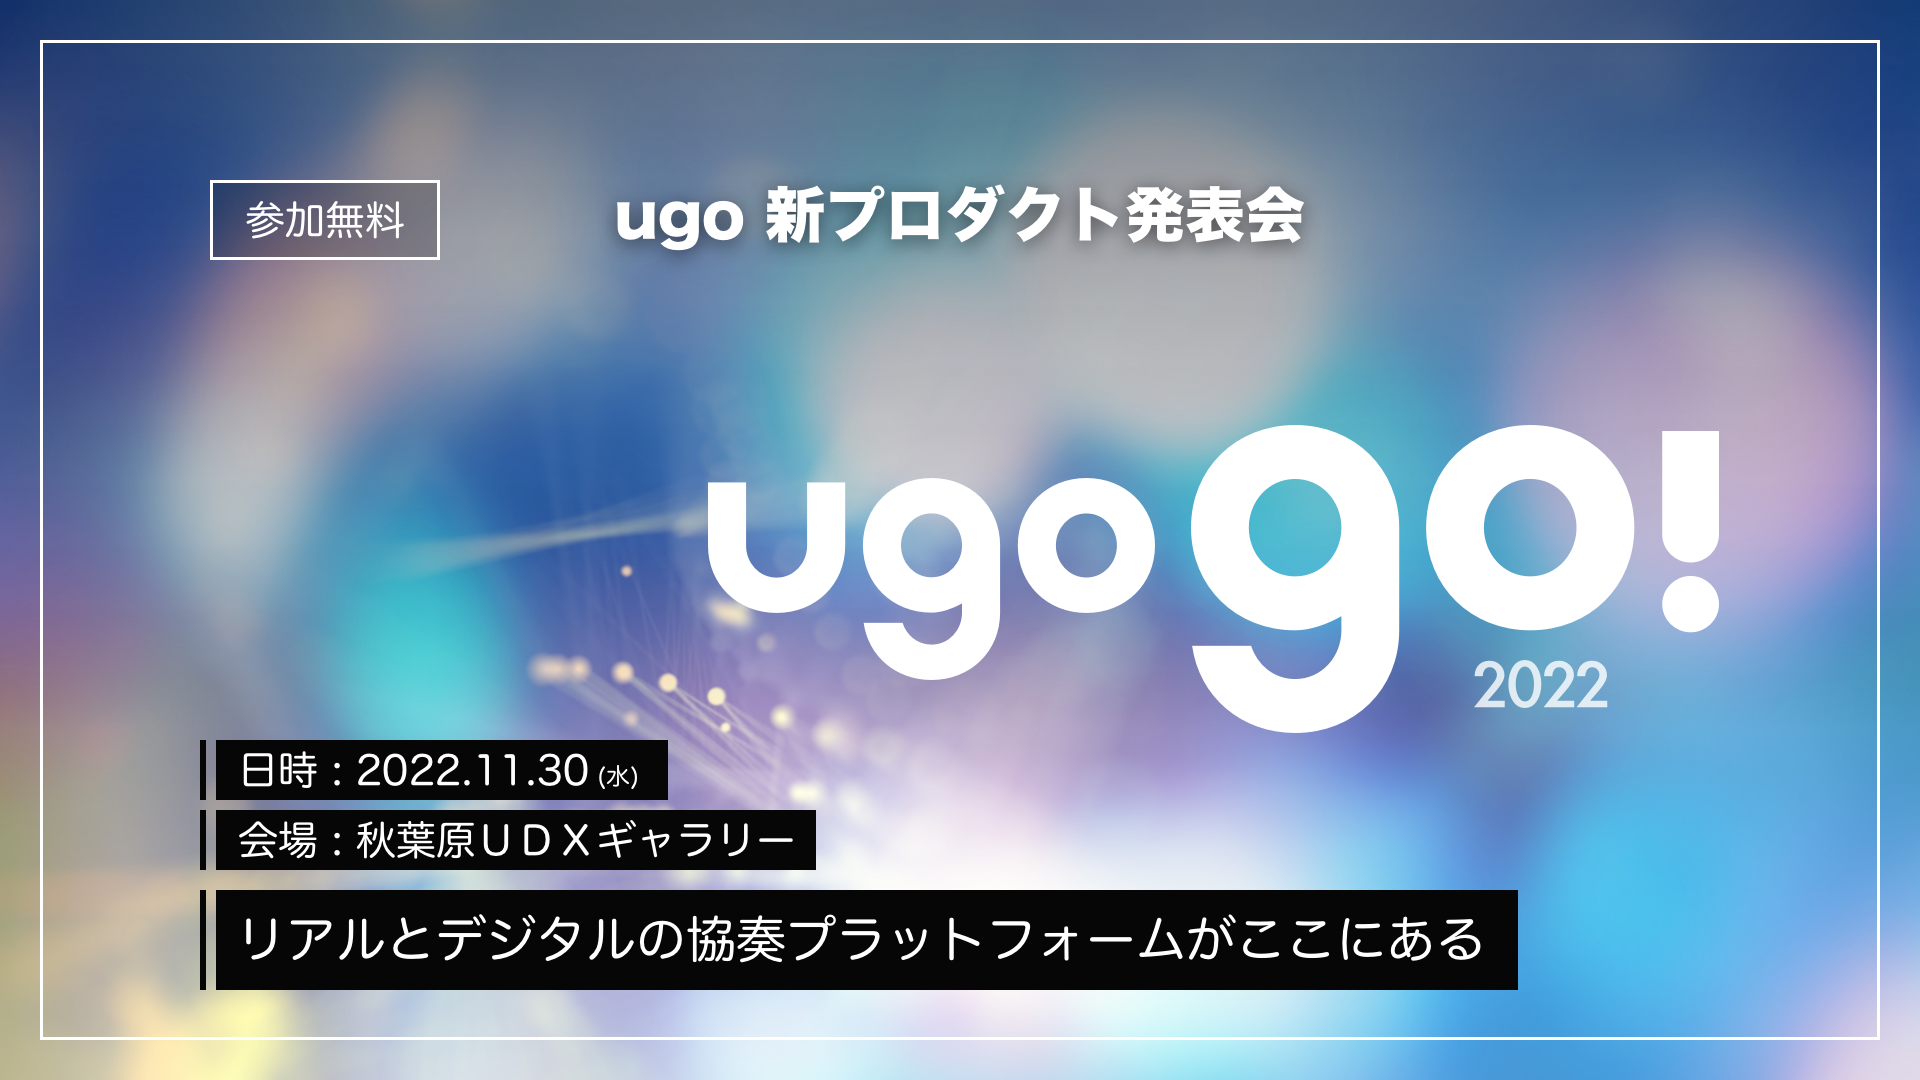 【イベント出展情報】「ugo go!2022」出展のお知らせ